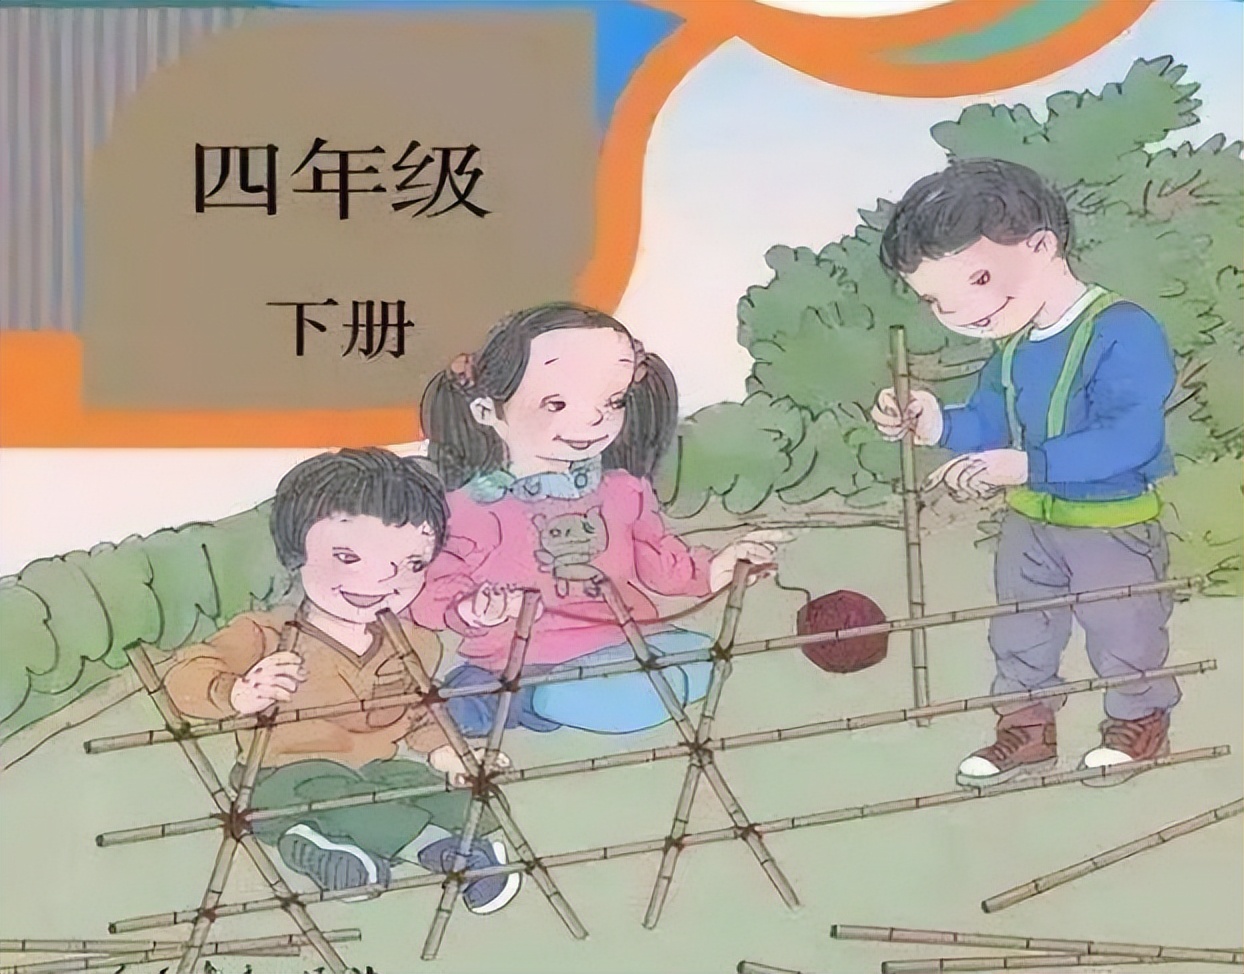 吴勇的双标行为令人厌恶，中国小孩引起不适，外国小孩却浓眉大眼